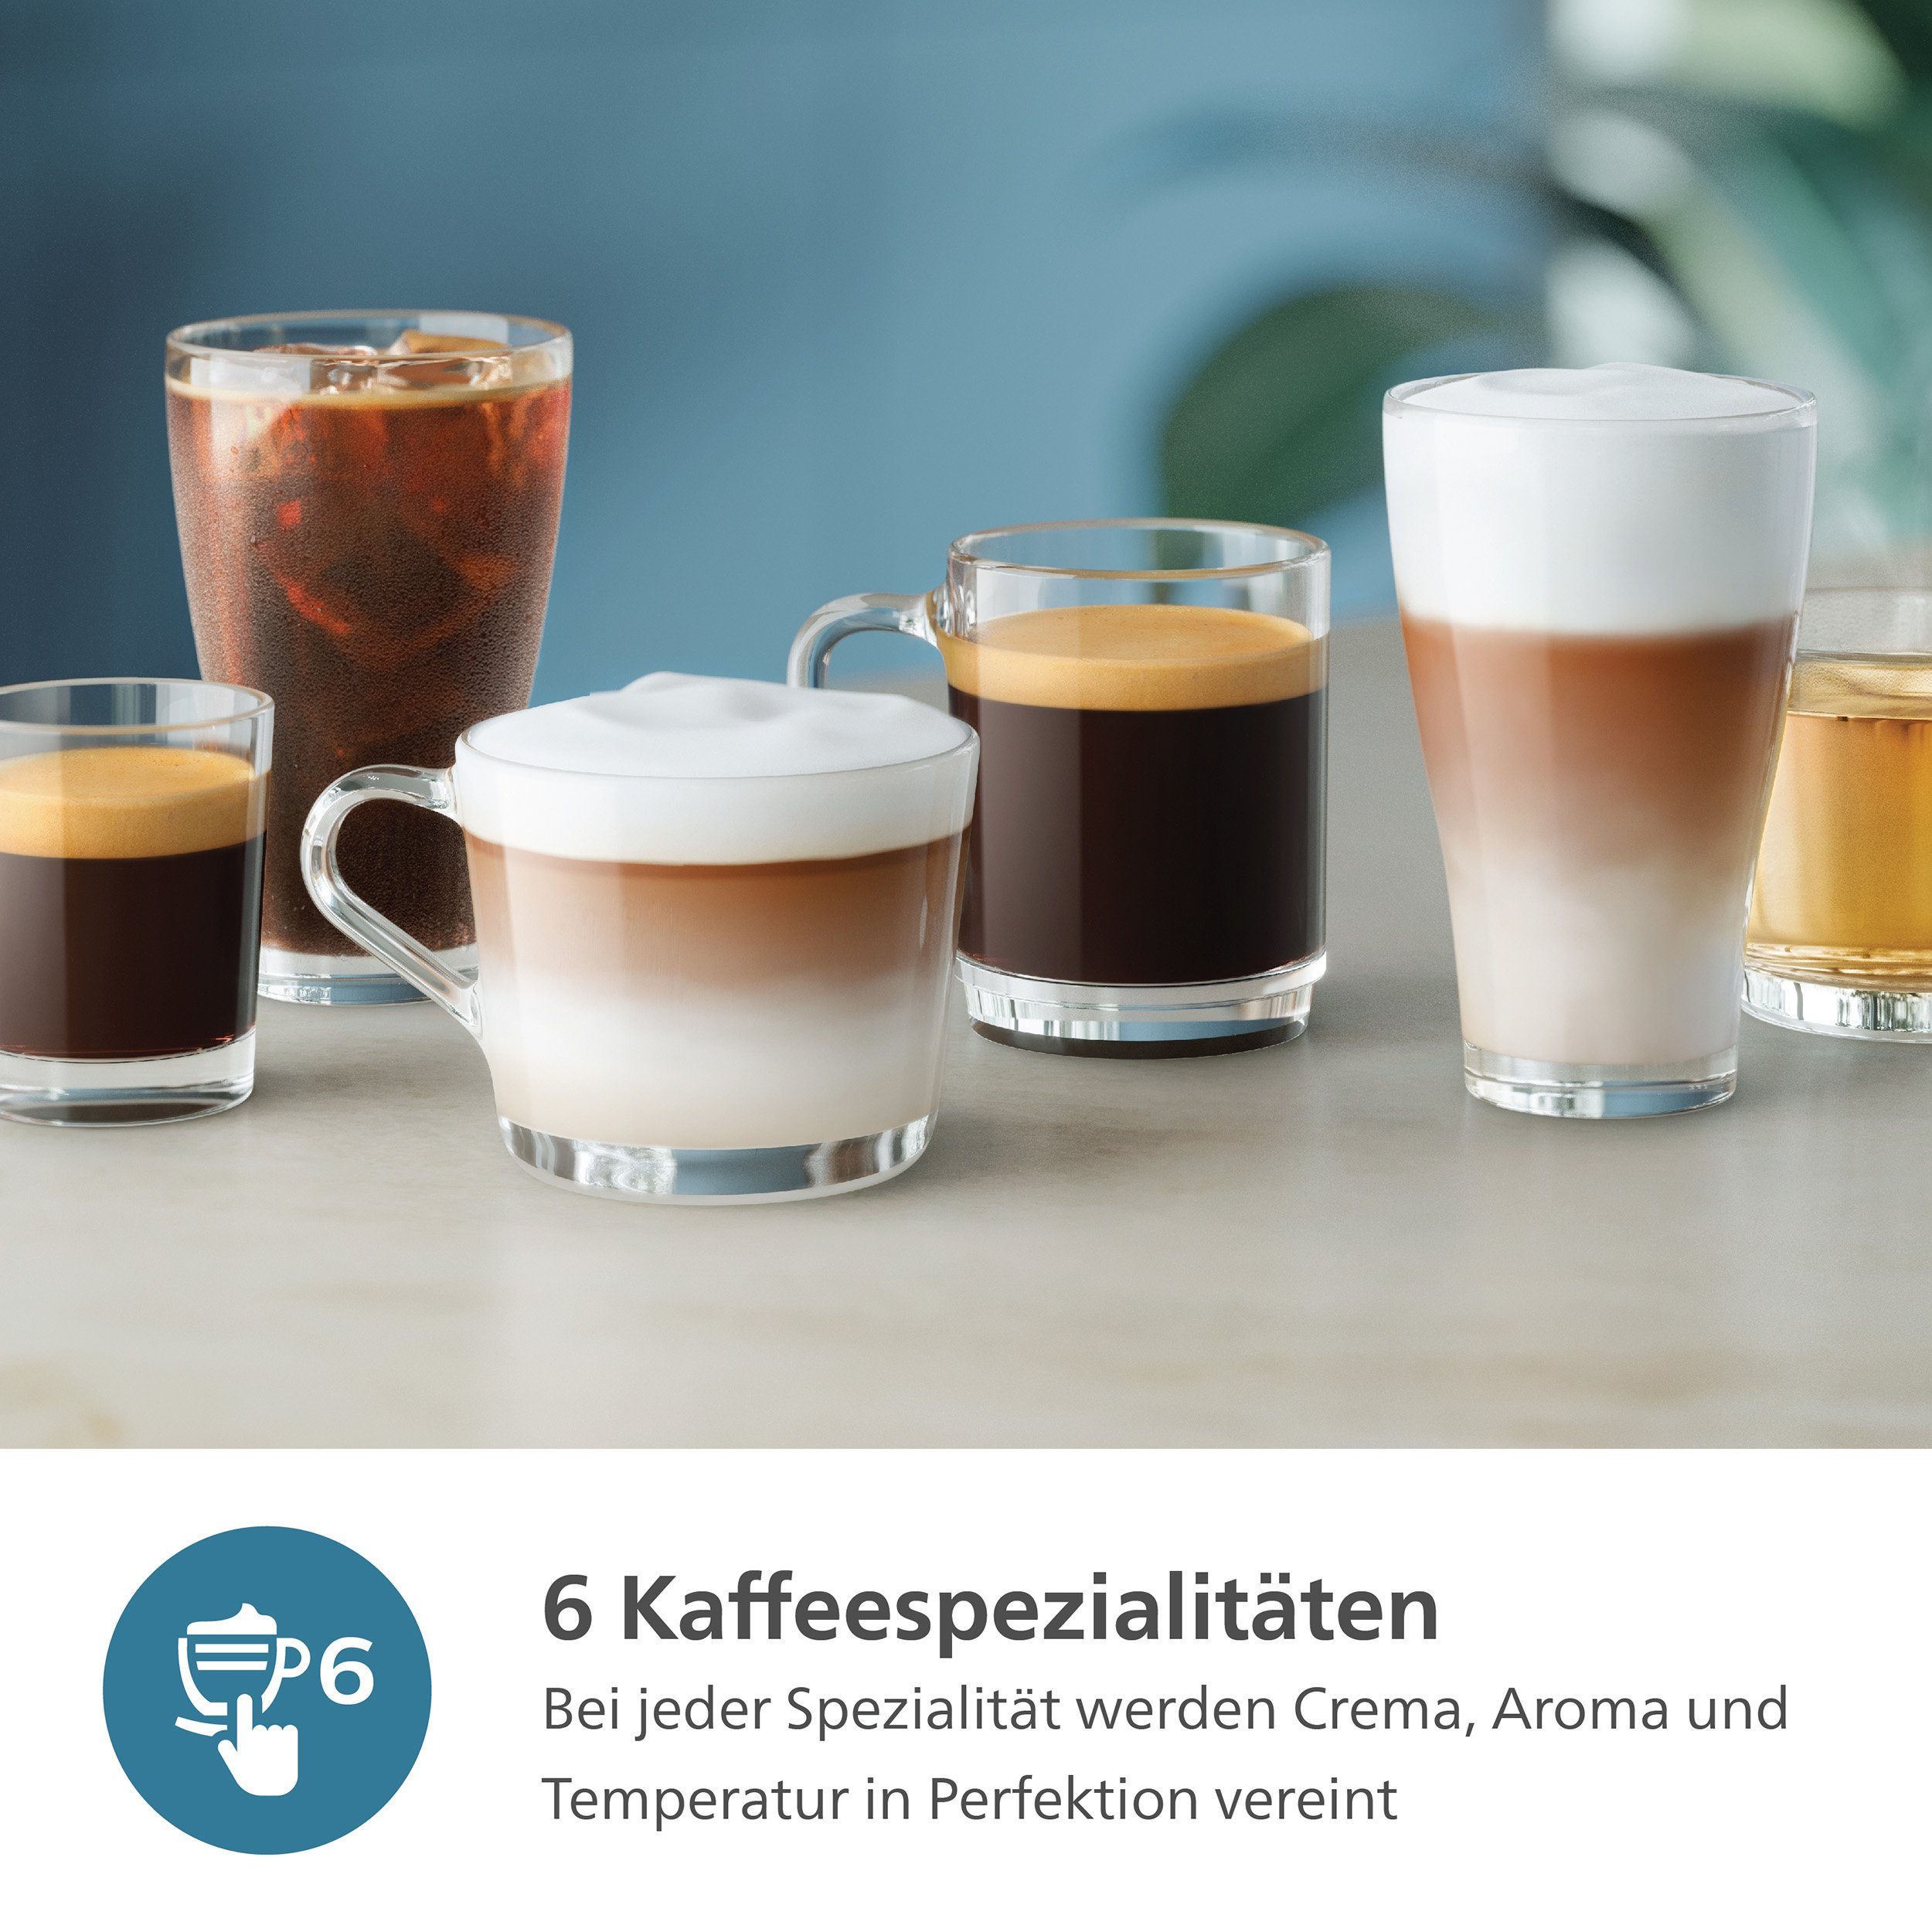 Kaffeevollautomat mit 6 LatteGo-Milchsystem, Philips Kaffeespezialitäten, EP3343/50 Series, Weiß/Schwarz 3300